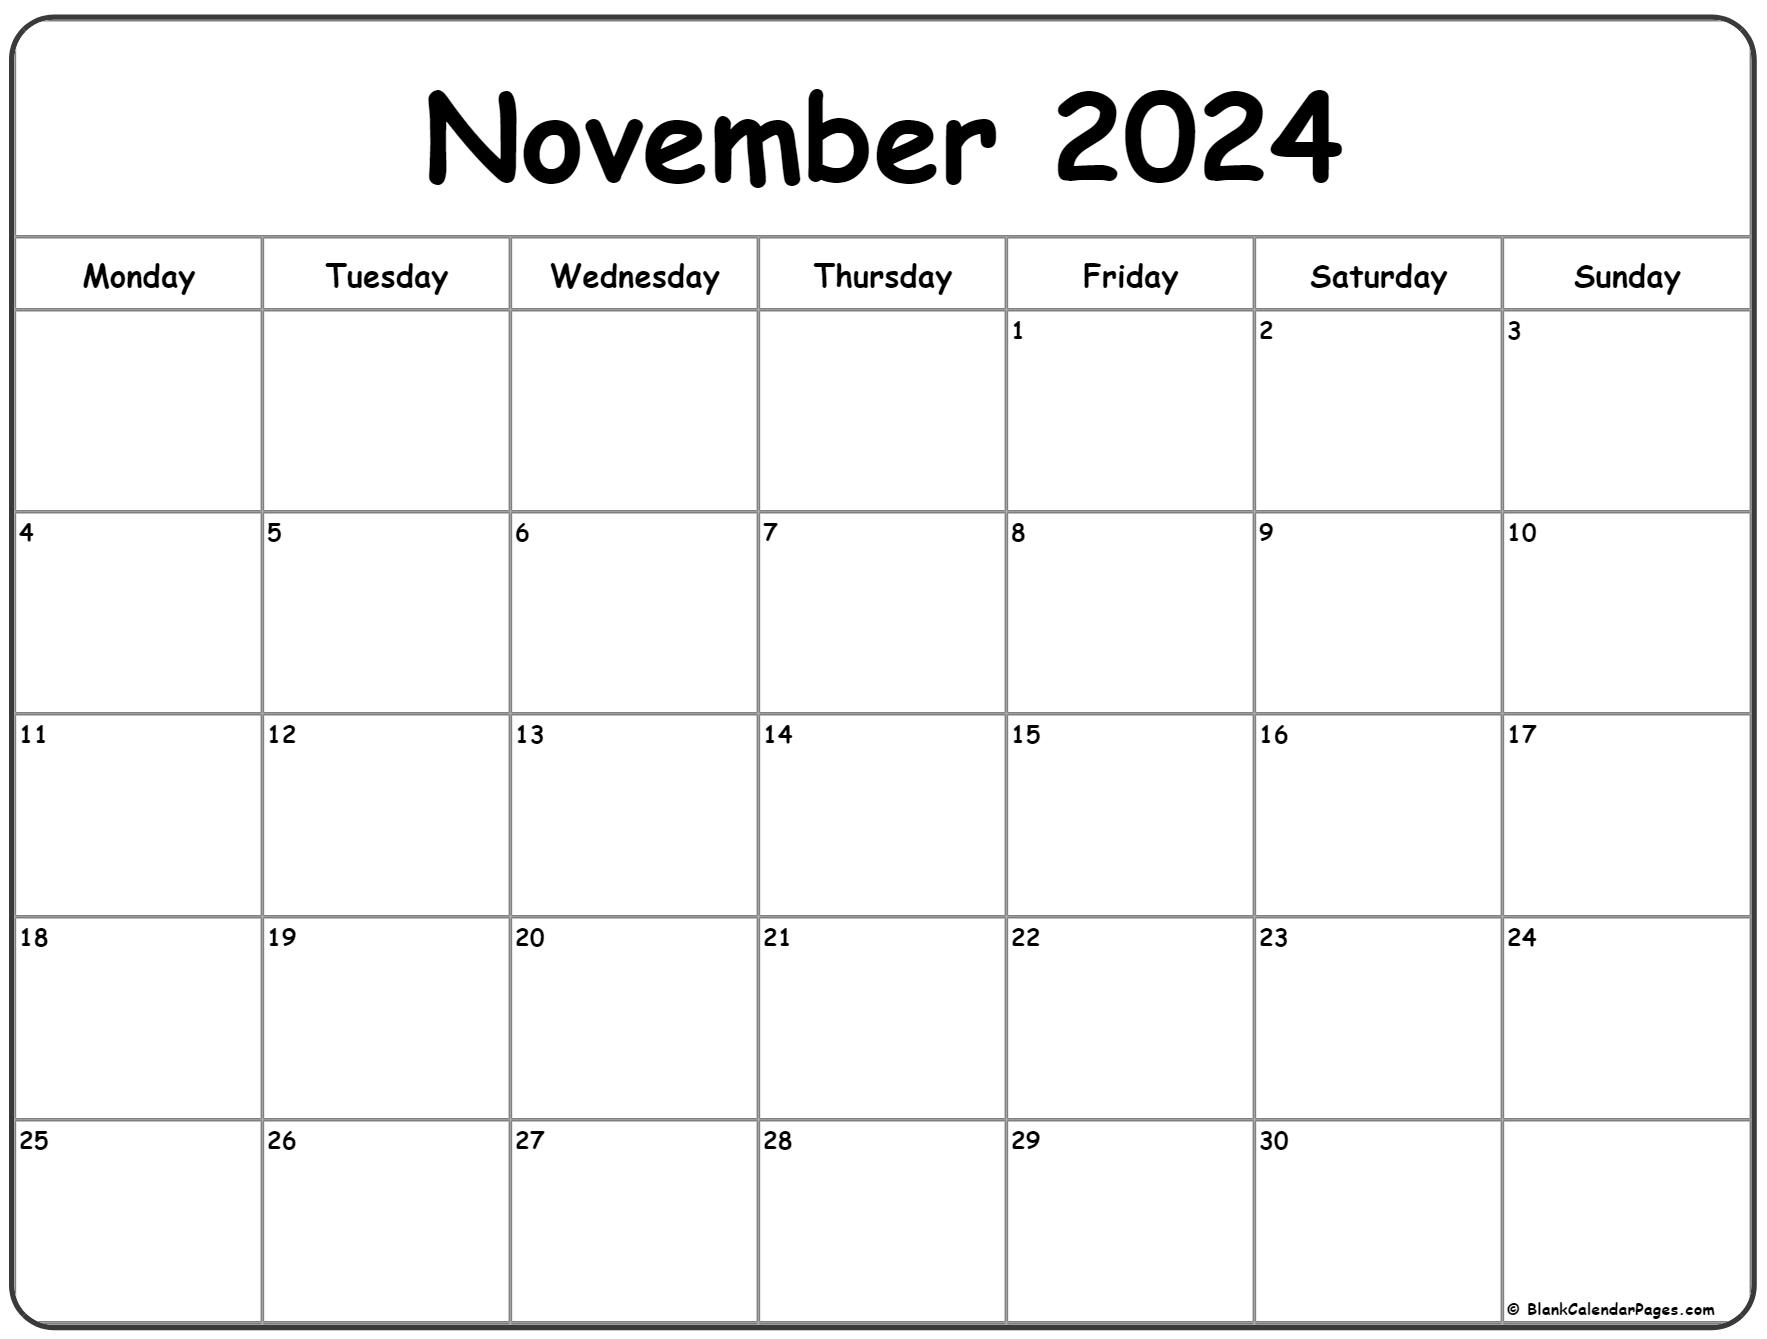 November 2024 Monday Calendar | Monday To Sunday for Printable November Calendar 2024